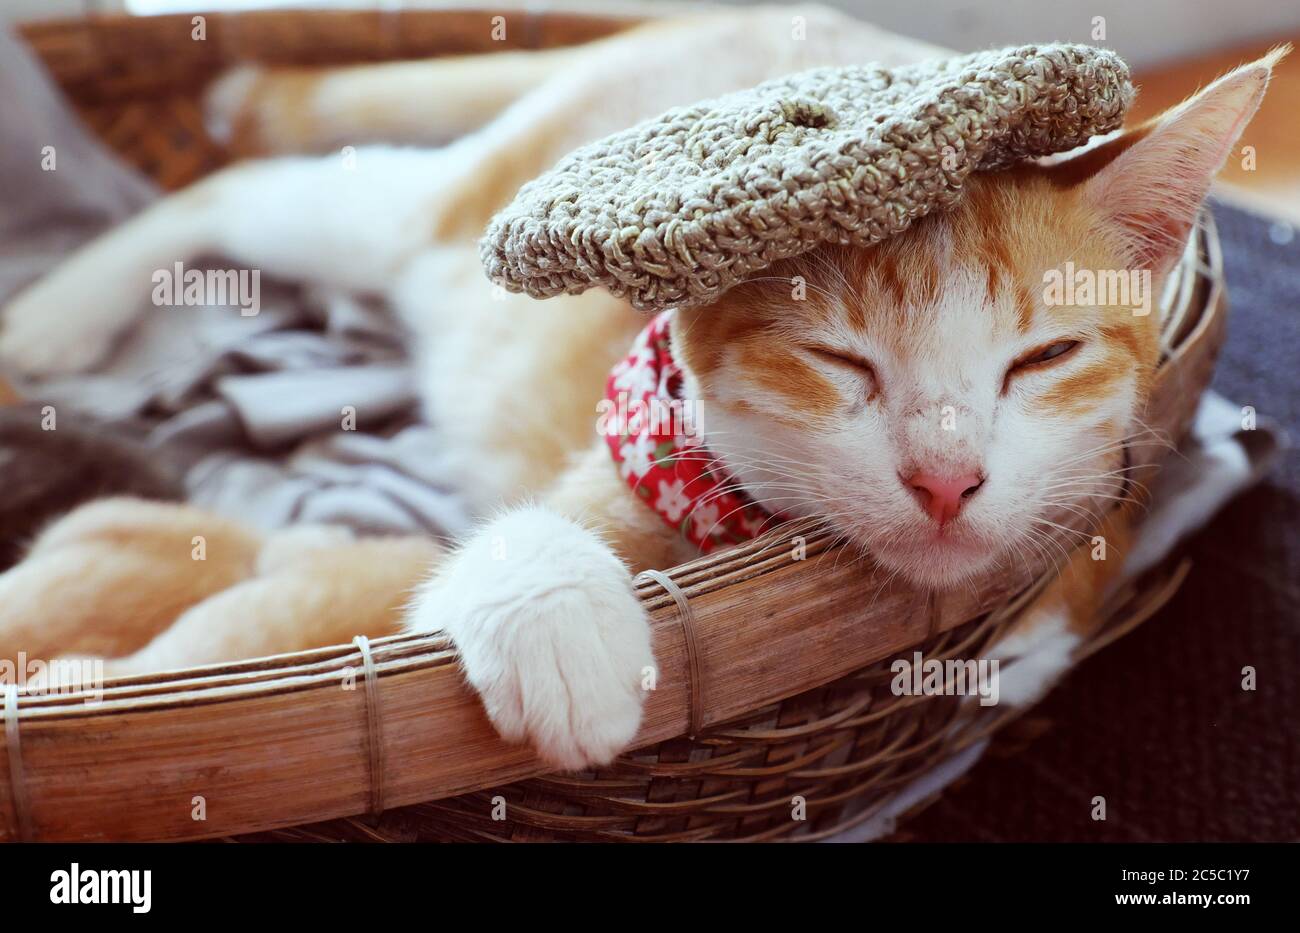 Gros plan portrait de la mère chat visage porter chapeau en laine, yeux proches, couché dans un panier avec chaton nouveau-né, joli animal en fourrure orange, les membres antérieurs tiennent le bord Banque D'Images